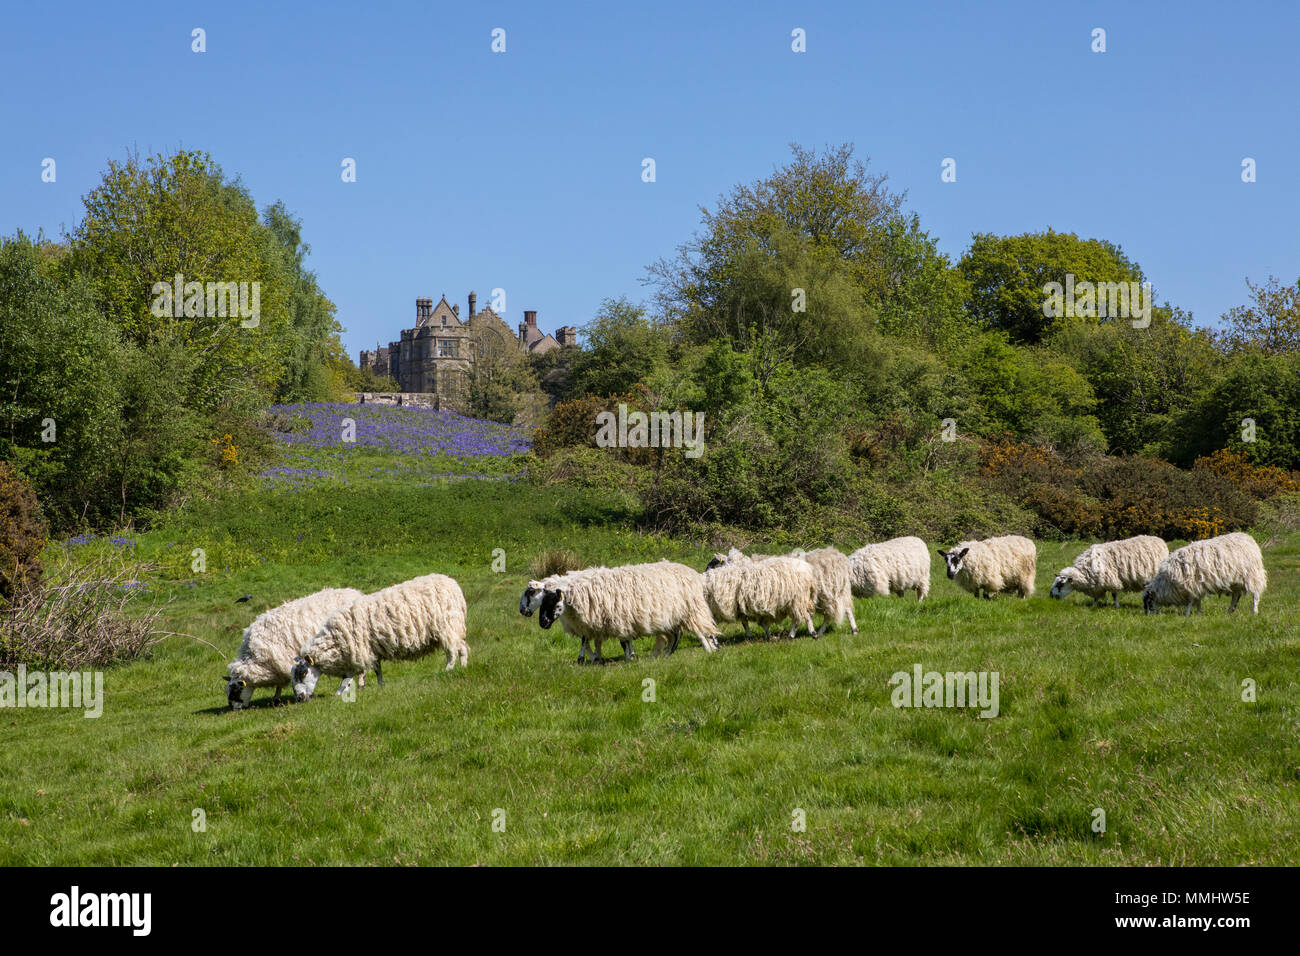 Un troupeau de moutons sur les champs de bataille à l'abbaye dans l'East Sussex, Royaume-Uni. Les champs à l'abbaye étaient l'emplacement de la bataille de Hastings en 1066. Banque D'Images